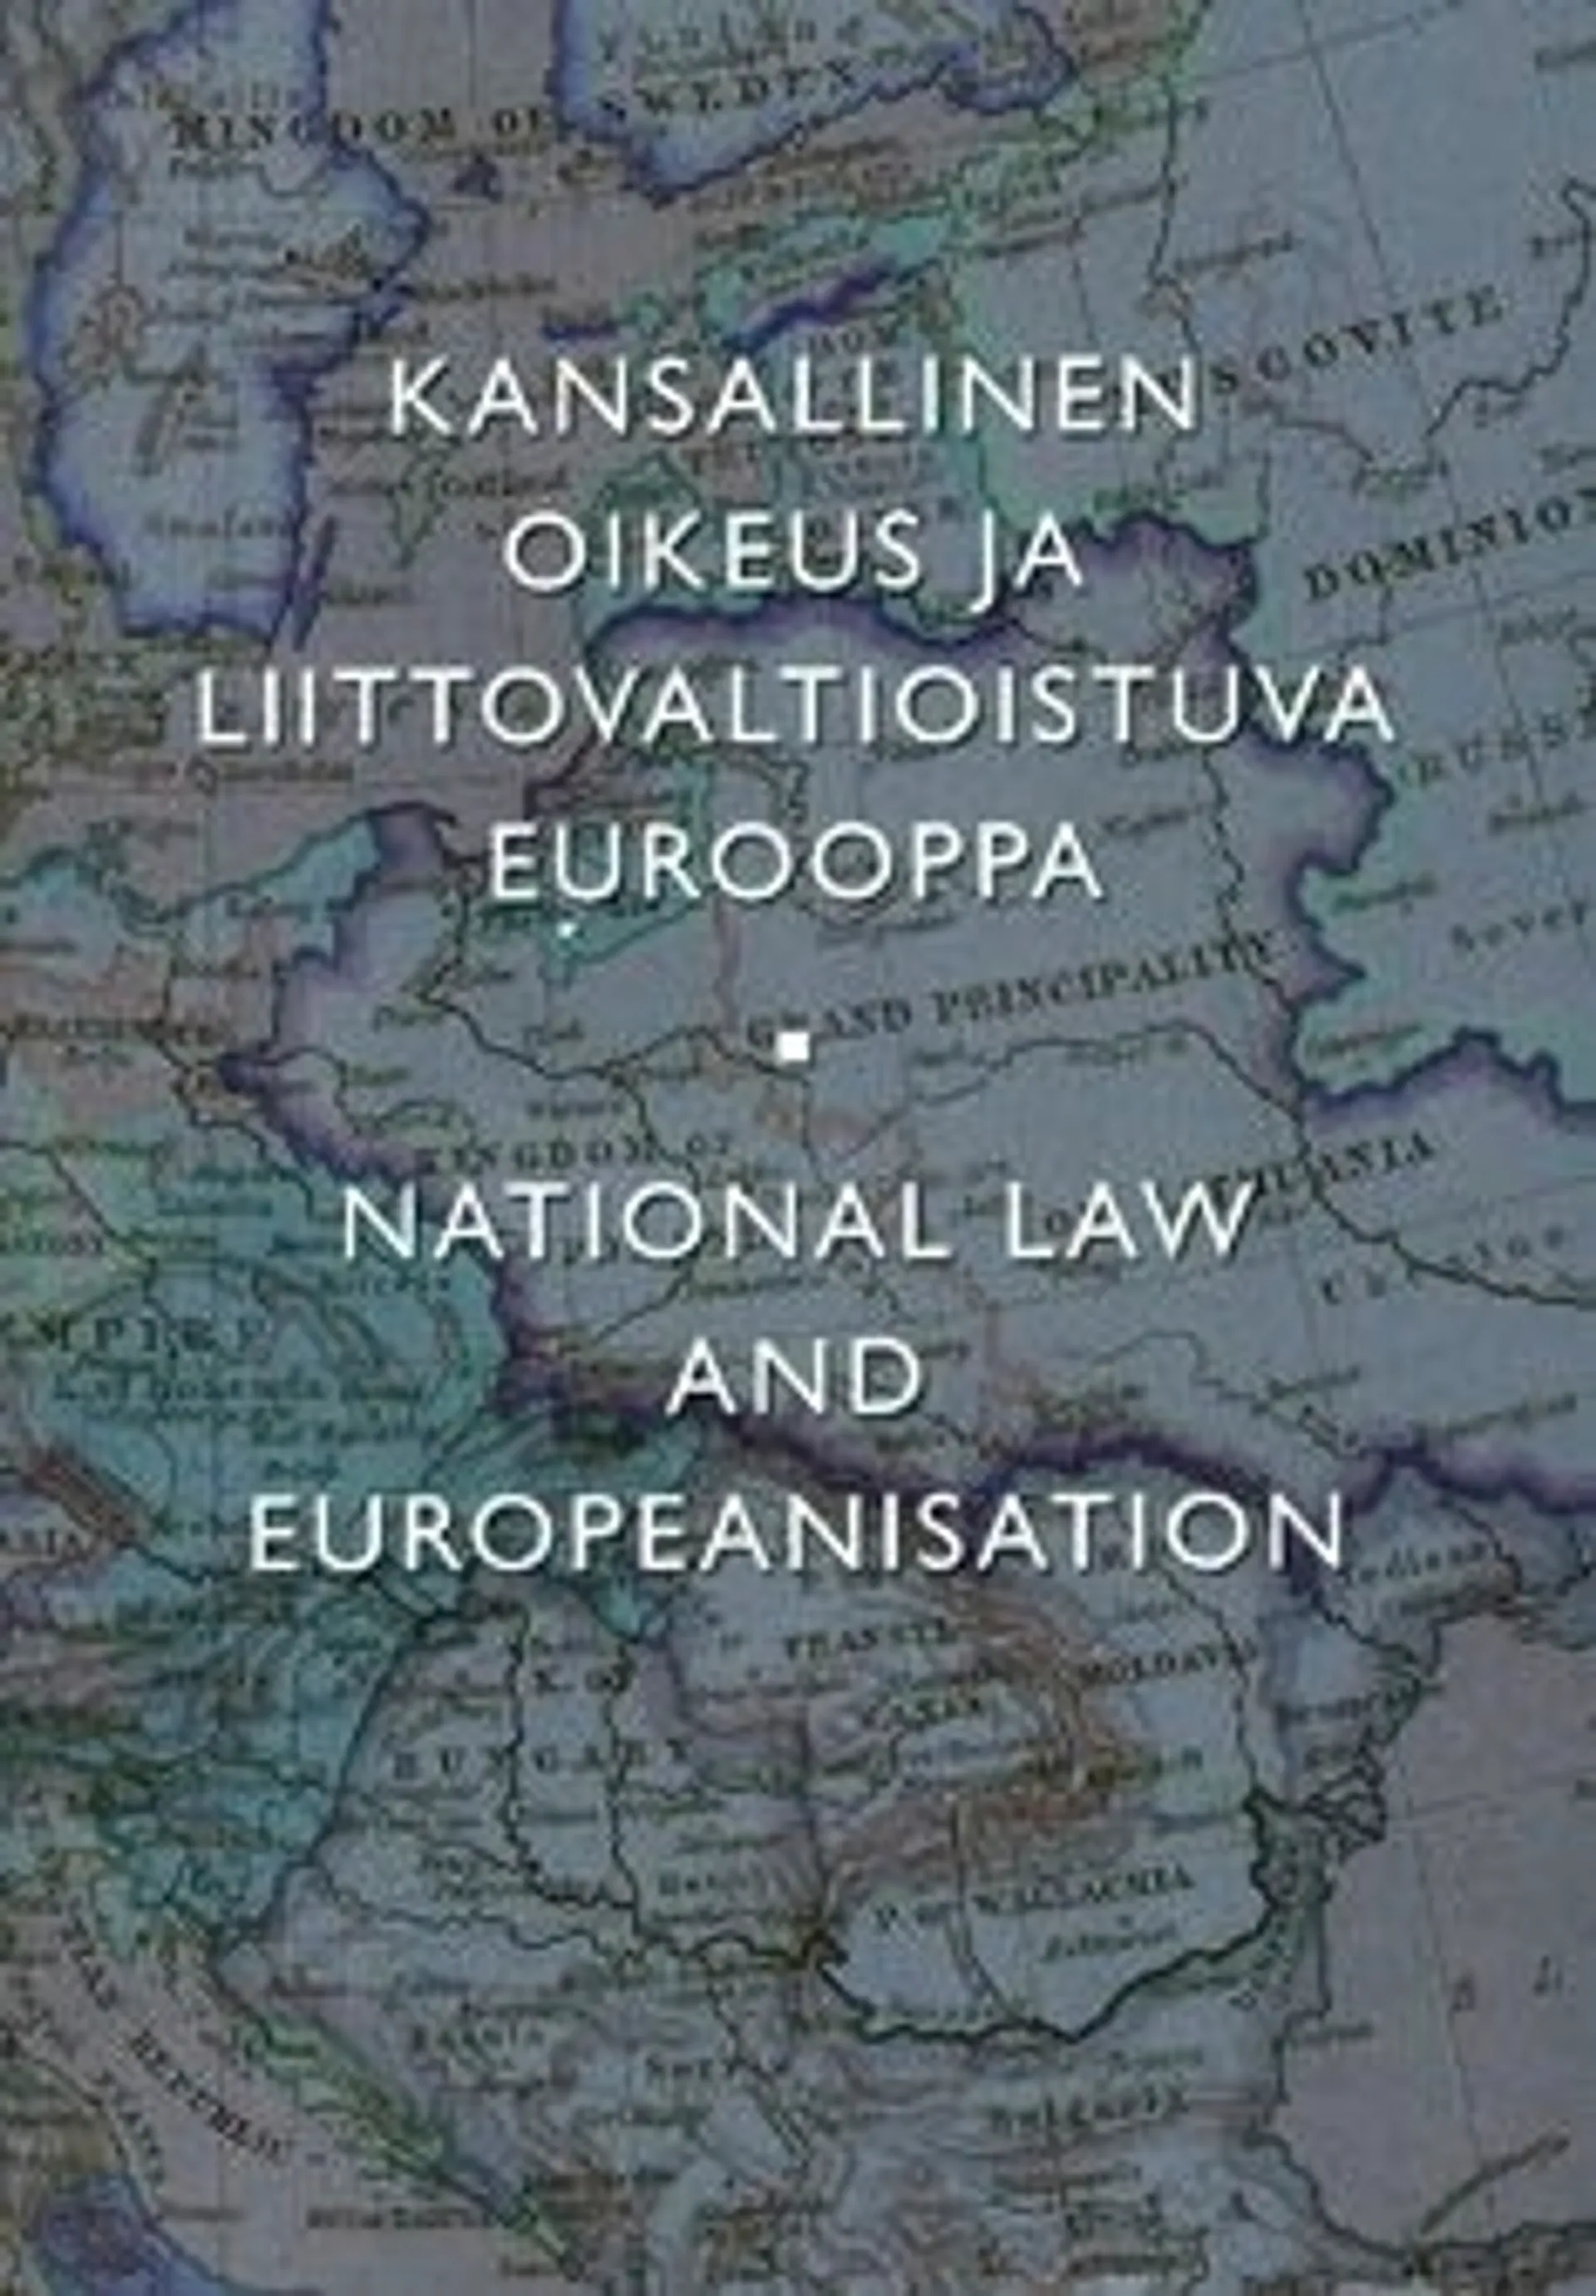 Kansallinen oikeus ja liittovaltioistuva Eurooppa